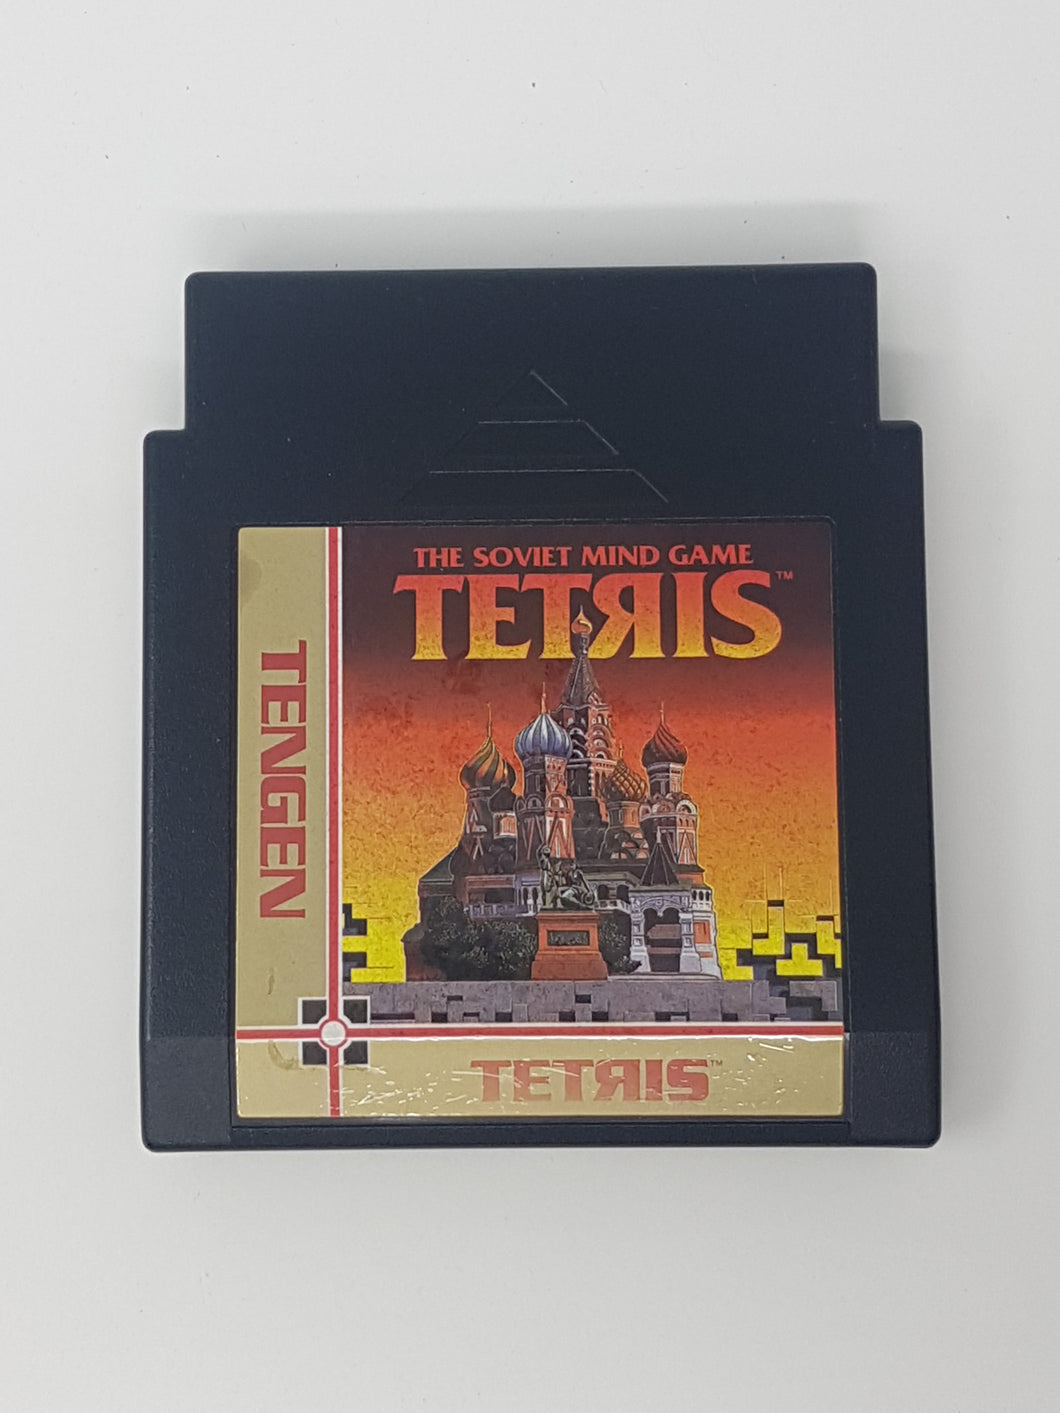 Tetris Tengen - Nintendo Nes